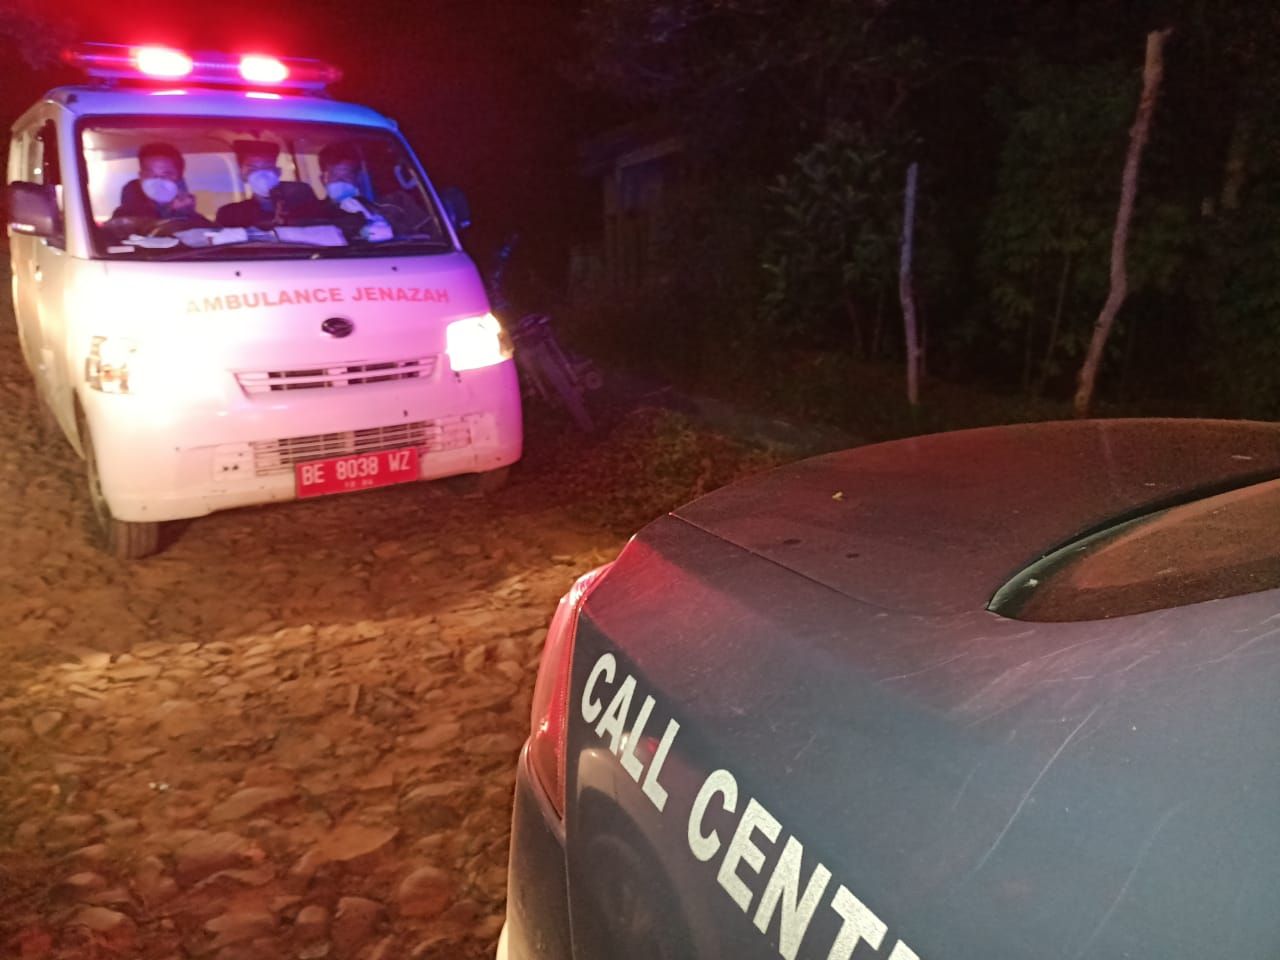 Mobil ambulance yang membawa jenazah Sugeng untuk dipulangkan dari Way Kanan Lampung menuju Desa Kalisalak, Kecamatan Margasari, Kabupaten Tegal